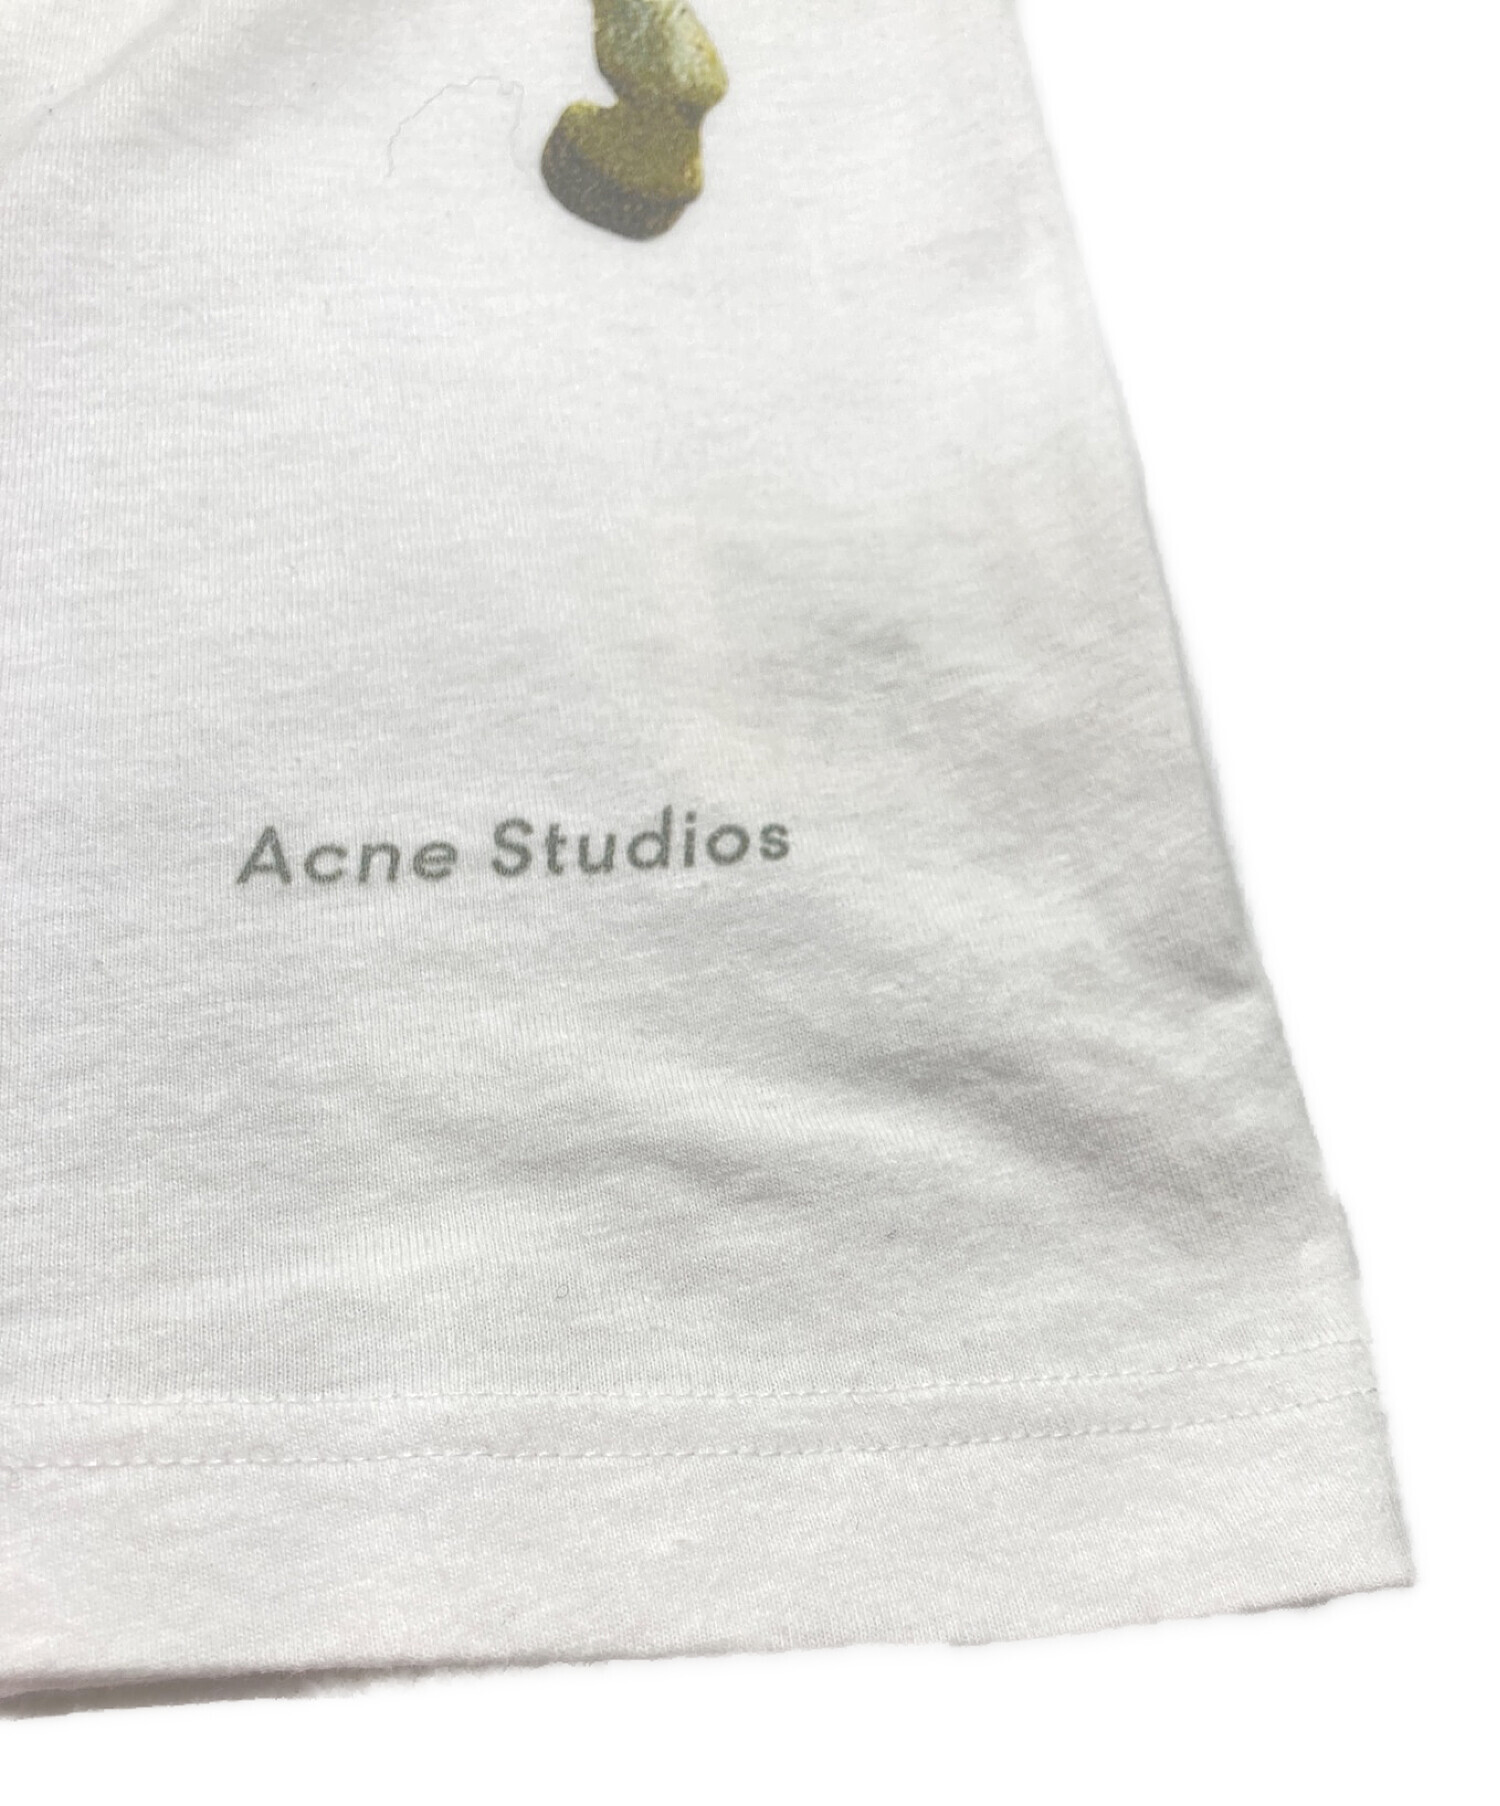 Acne Studios タオルTシャツ Sサイズ www.sudouestprimeurs.fr